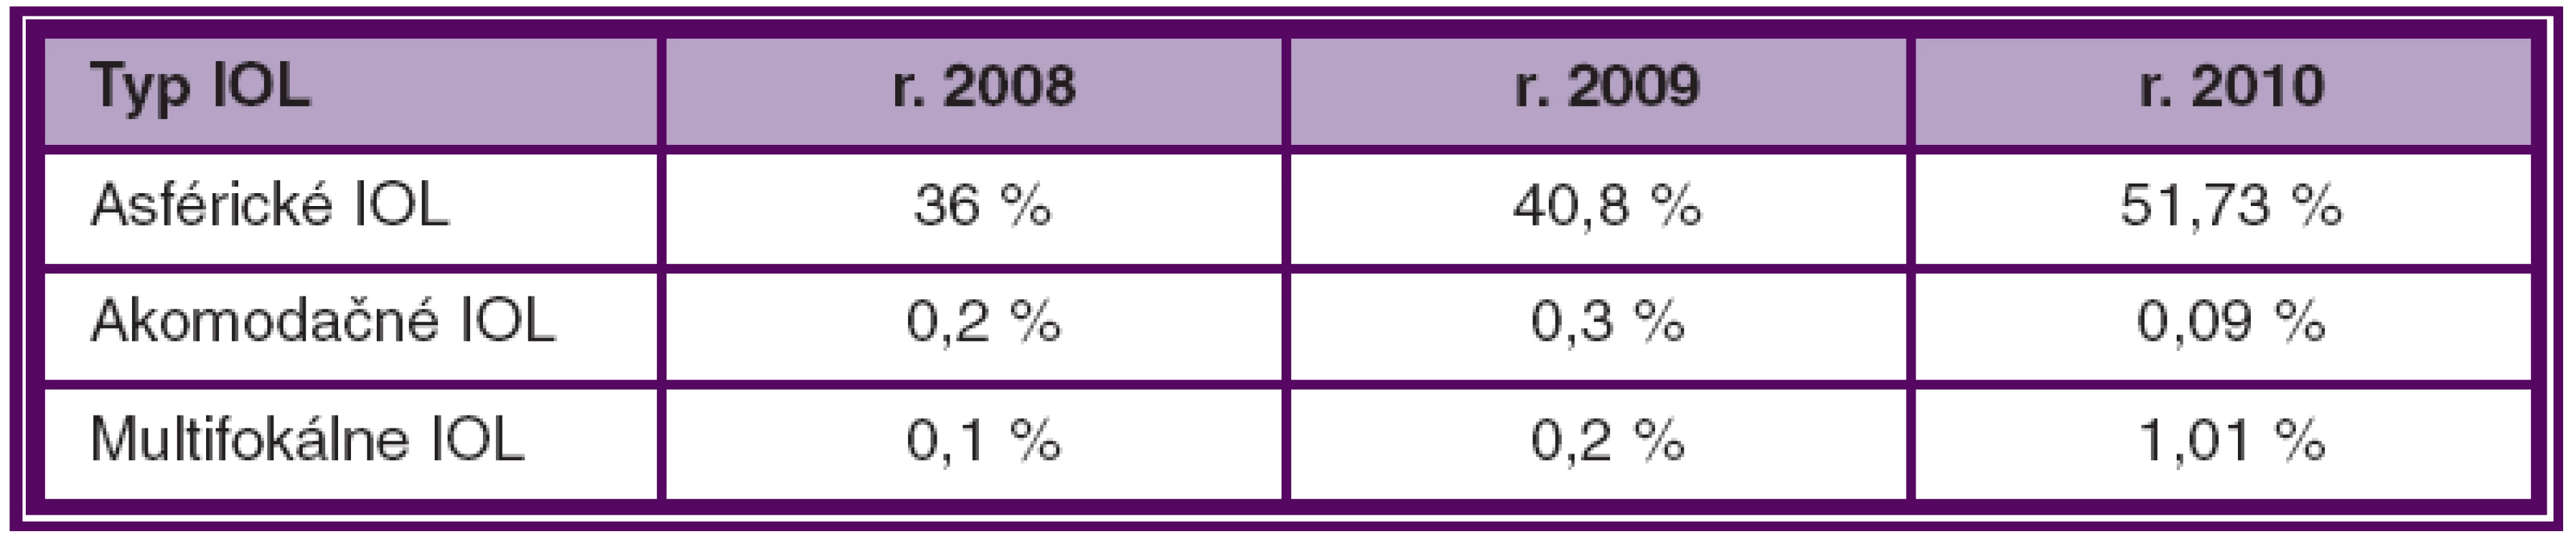 Počet (v %) používaných IOL v SR v jednotlivých rokoch